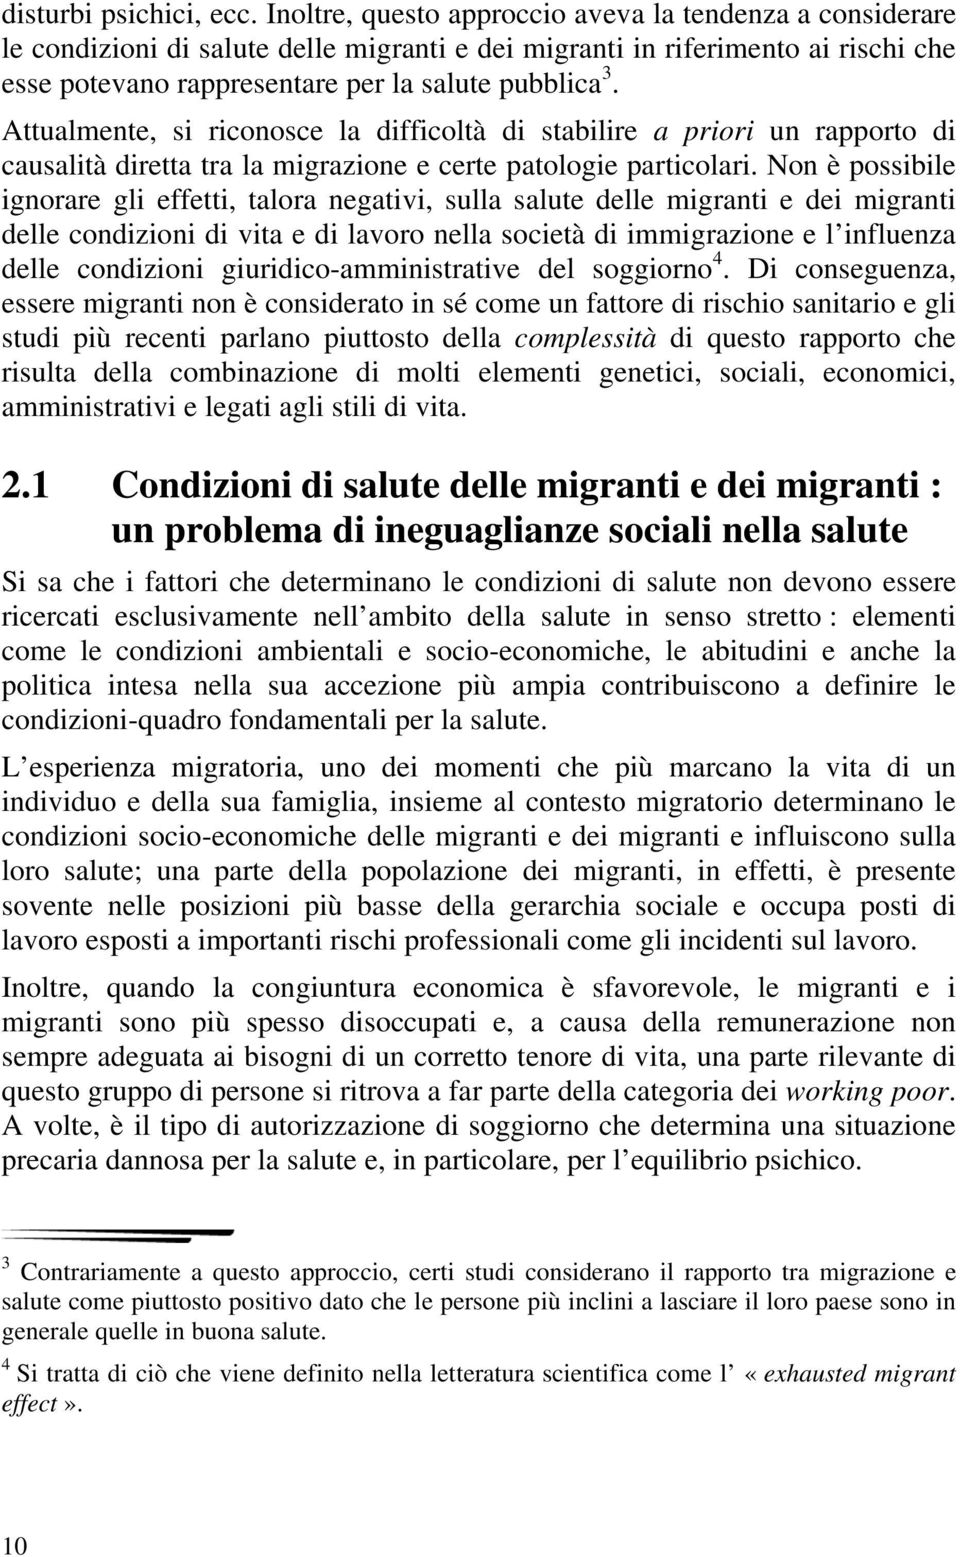 Attualmente, si riconosce la difficoltà di stabilire a priori un rapporto di causalità diretta tra la migrazione e certe patologie particolari.